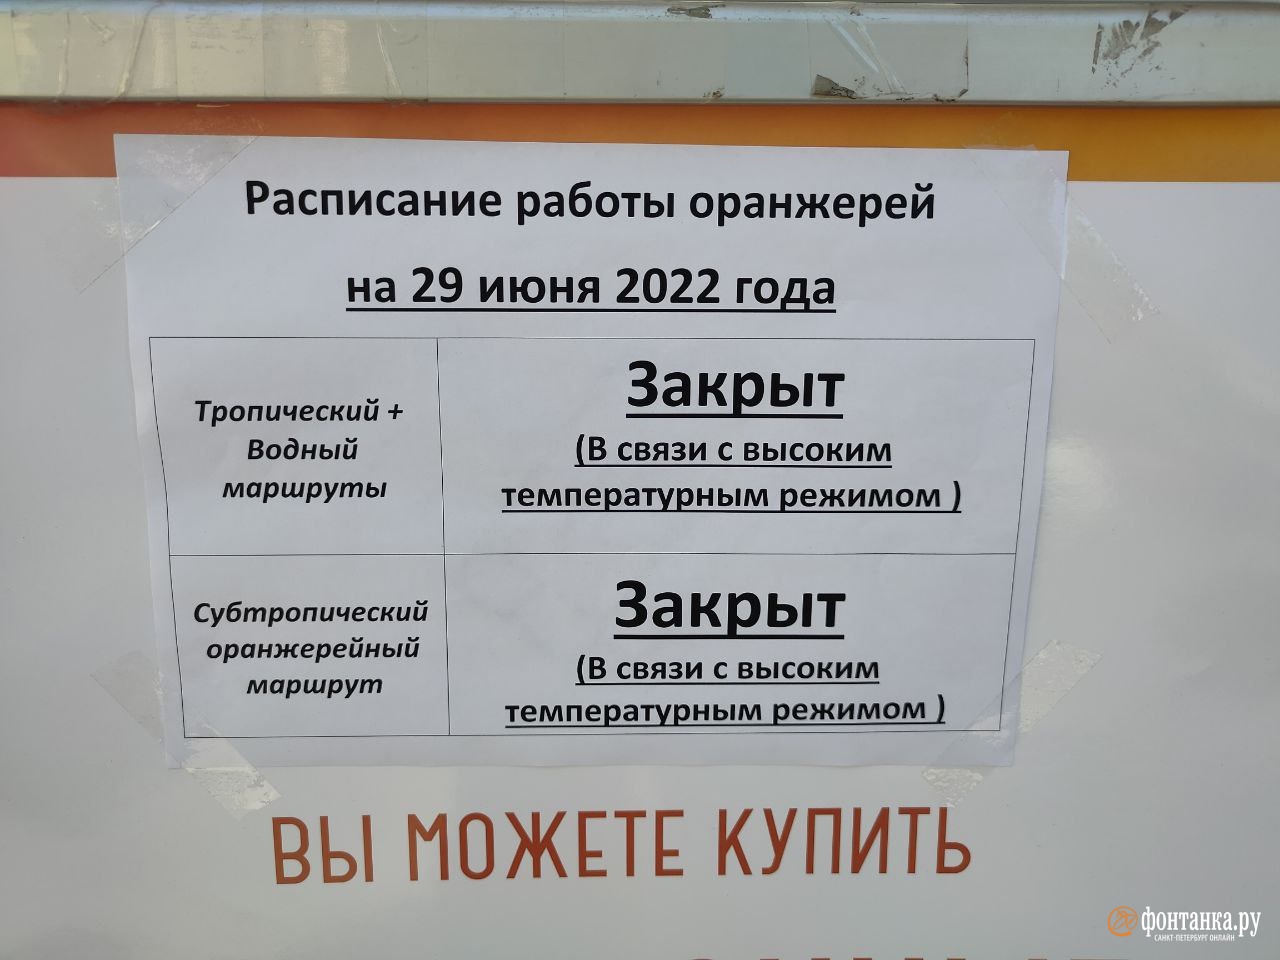 Ботанический сад в Петербурге временно закрыл оранжереи из-за жары